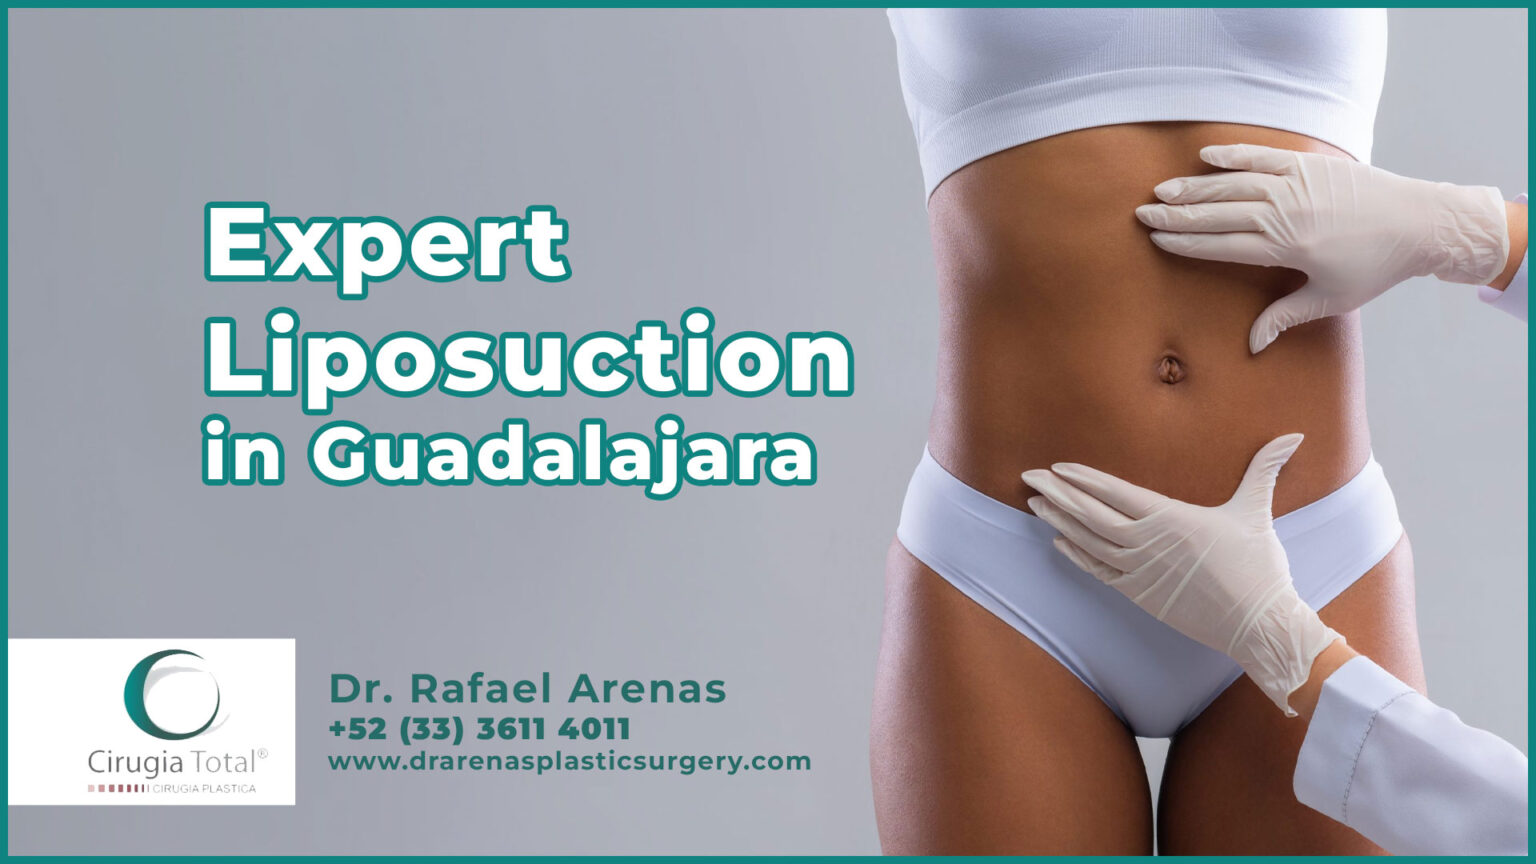 Expert Liposuction in Guadalajara